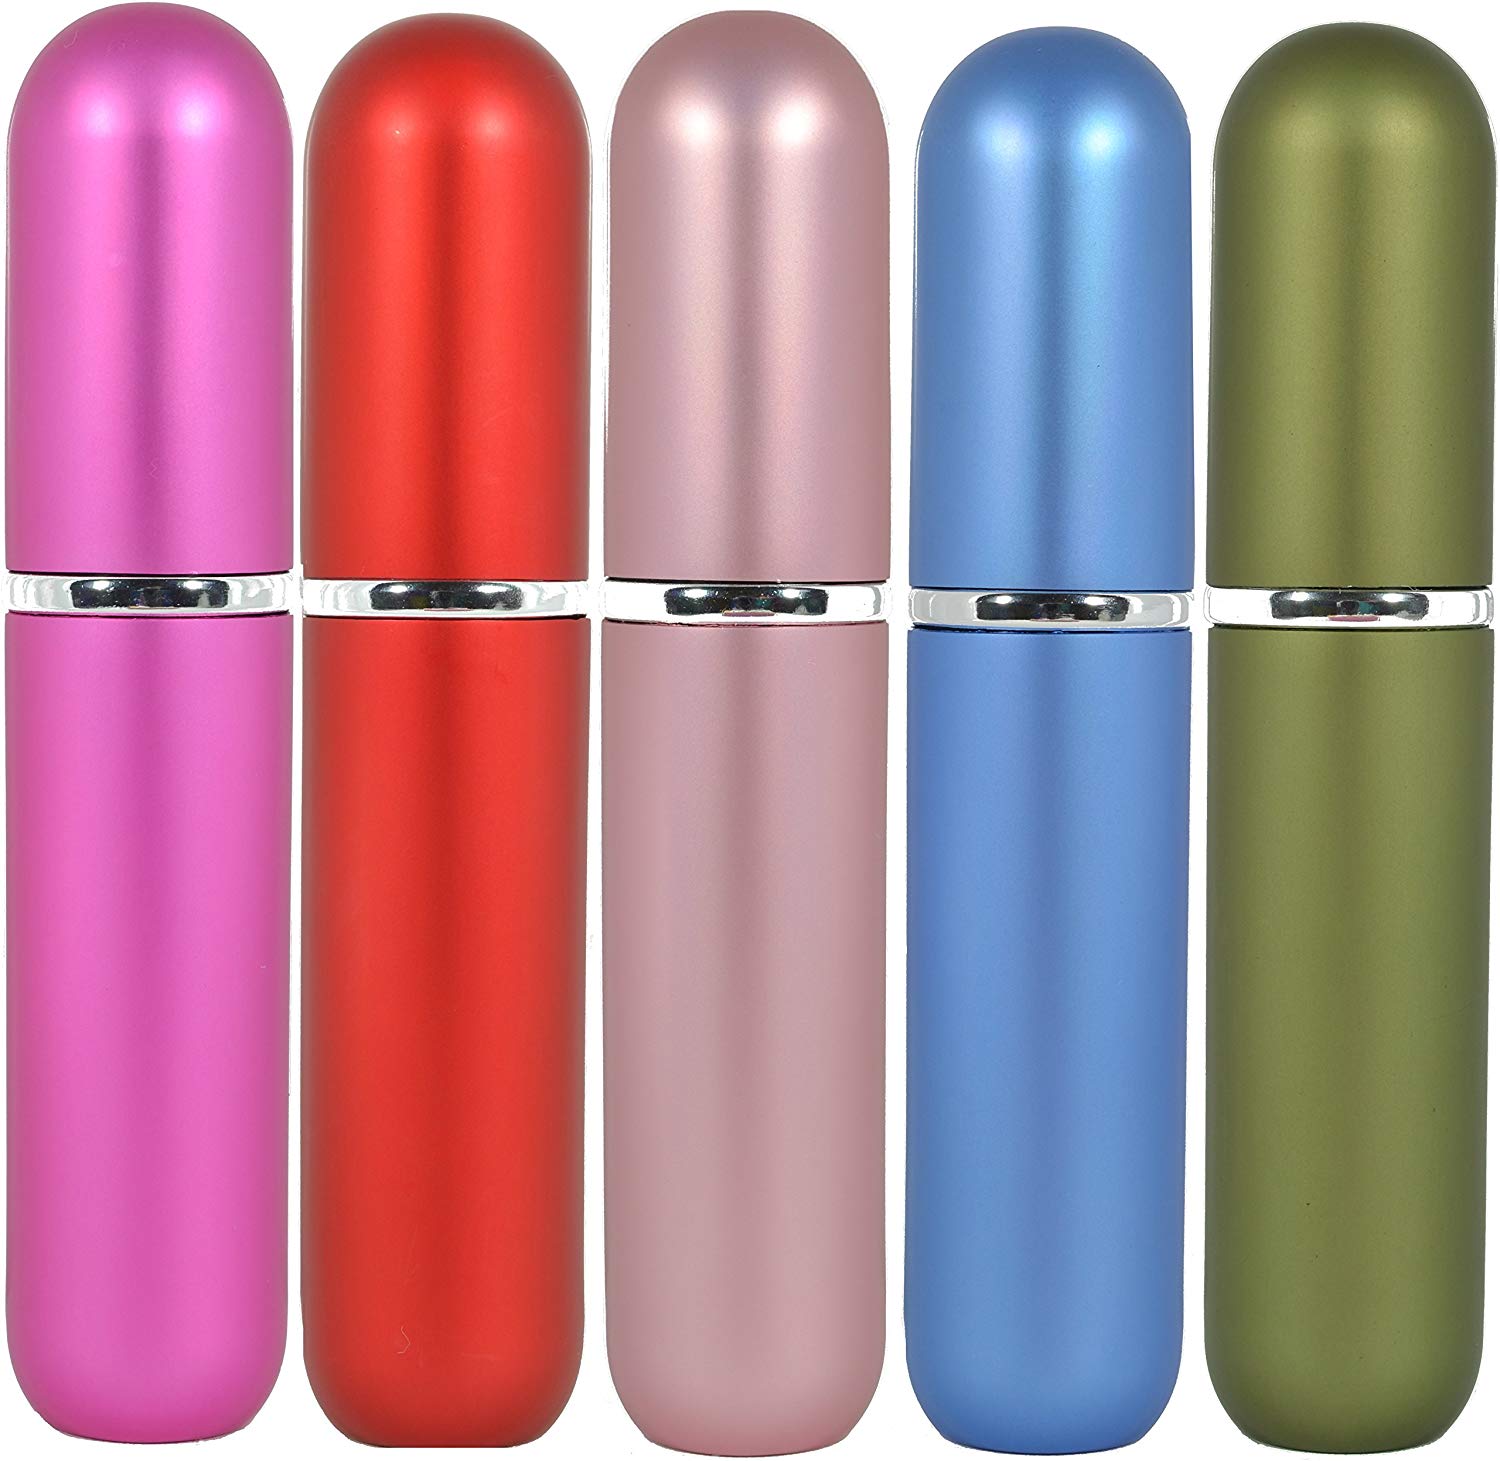 Premium Inhalers- 5 Gorgeous Colors